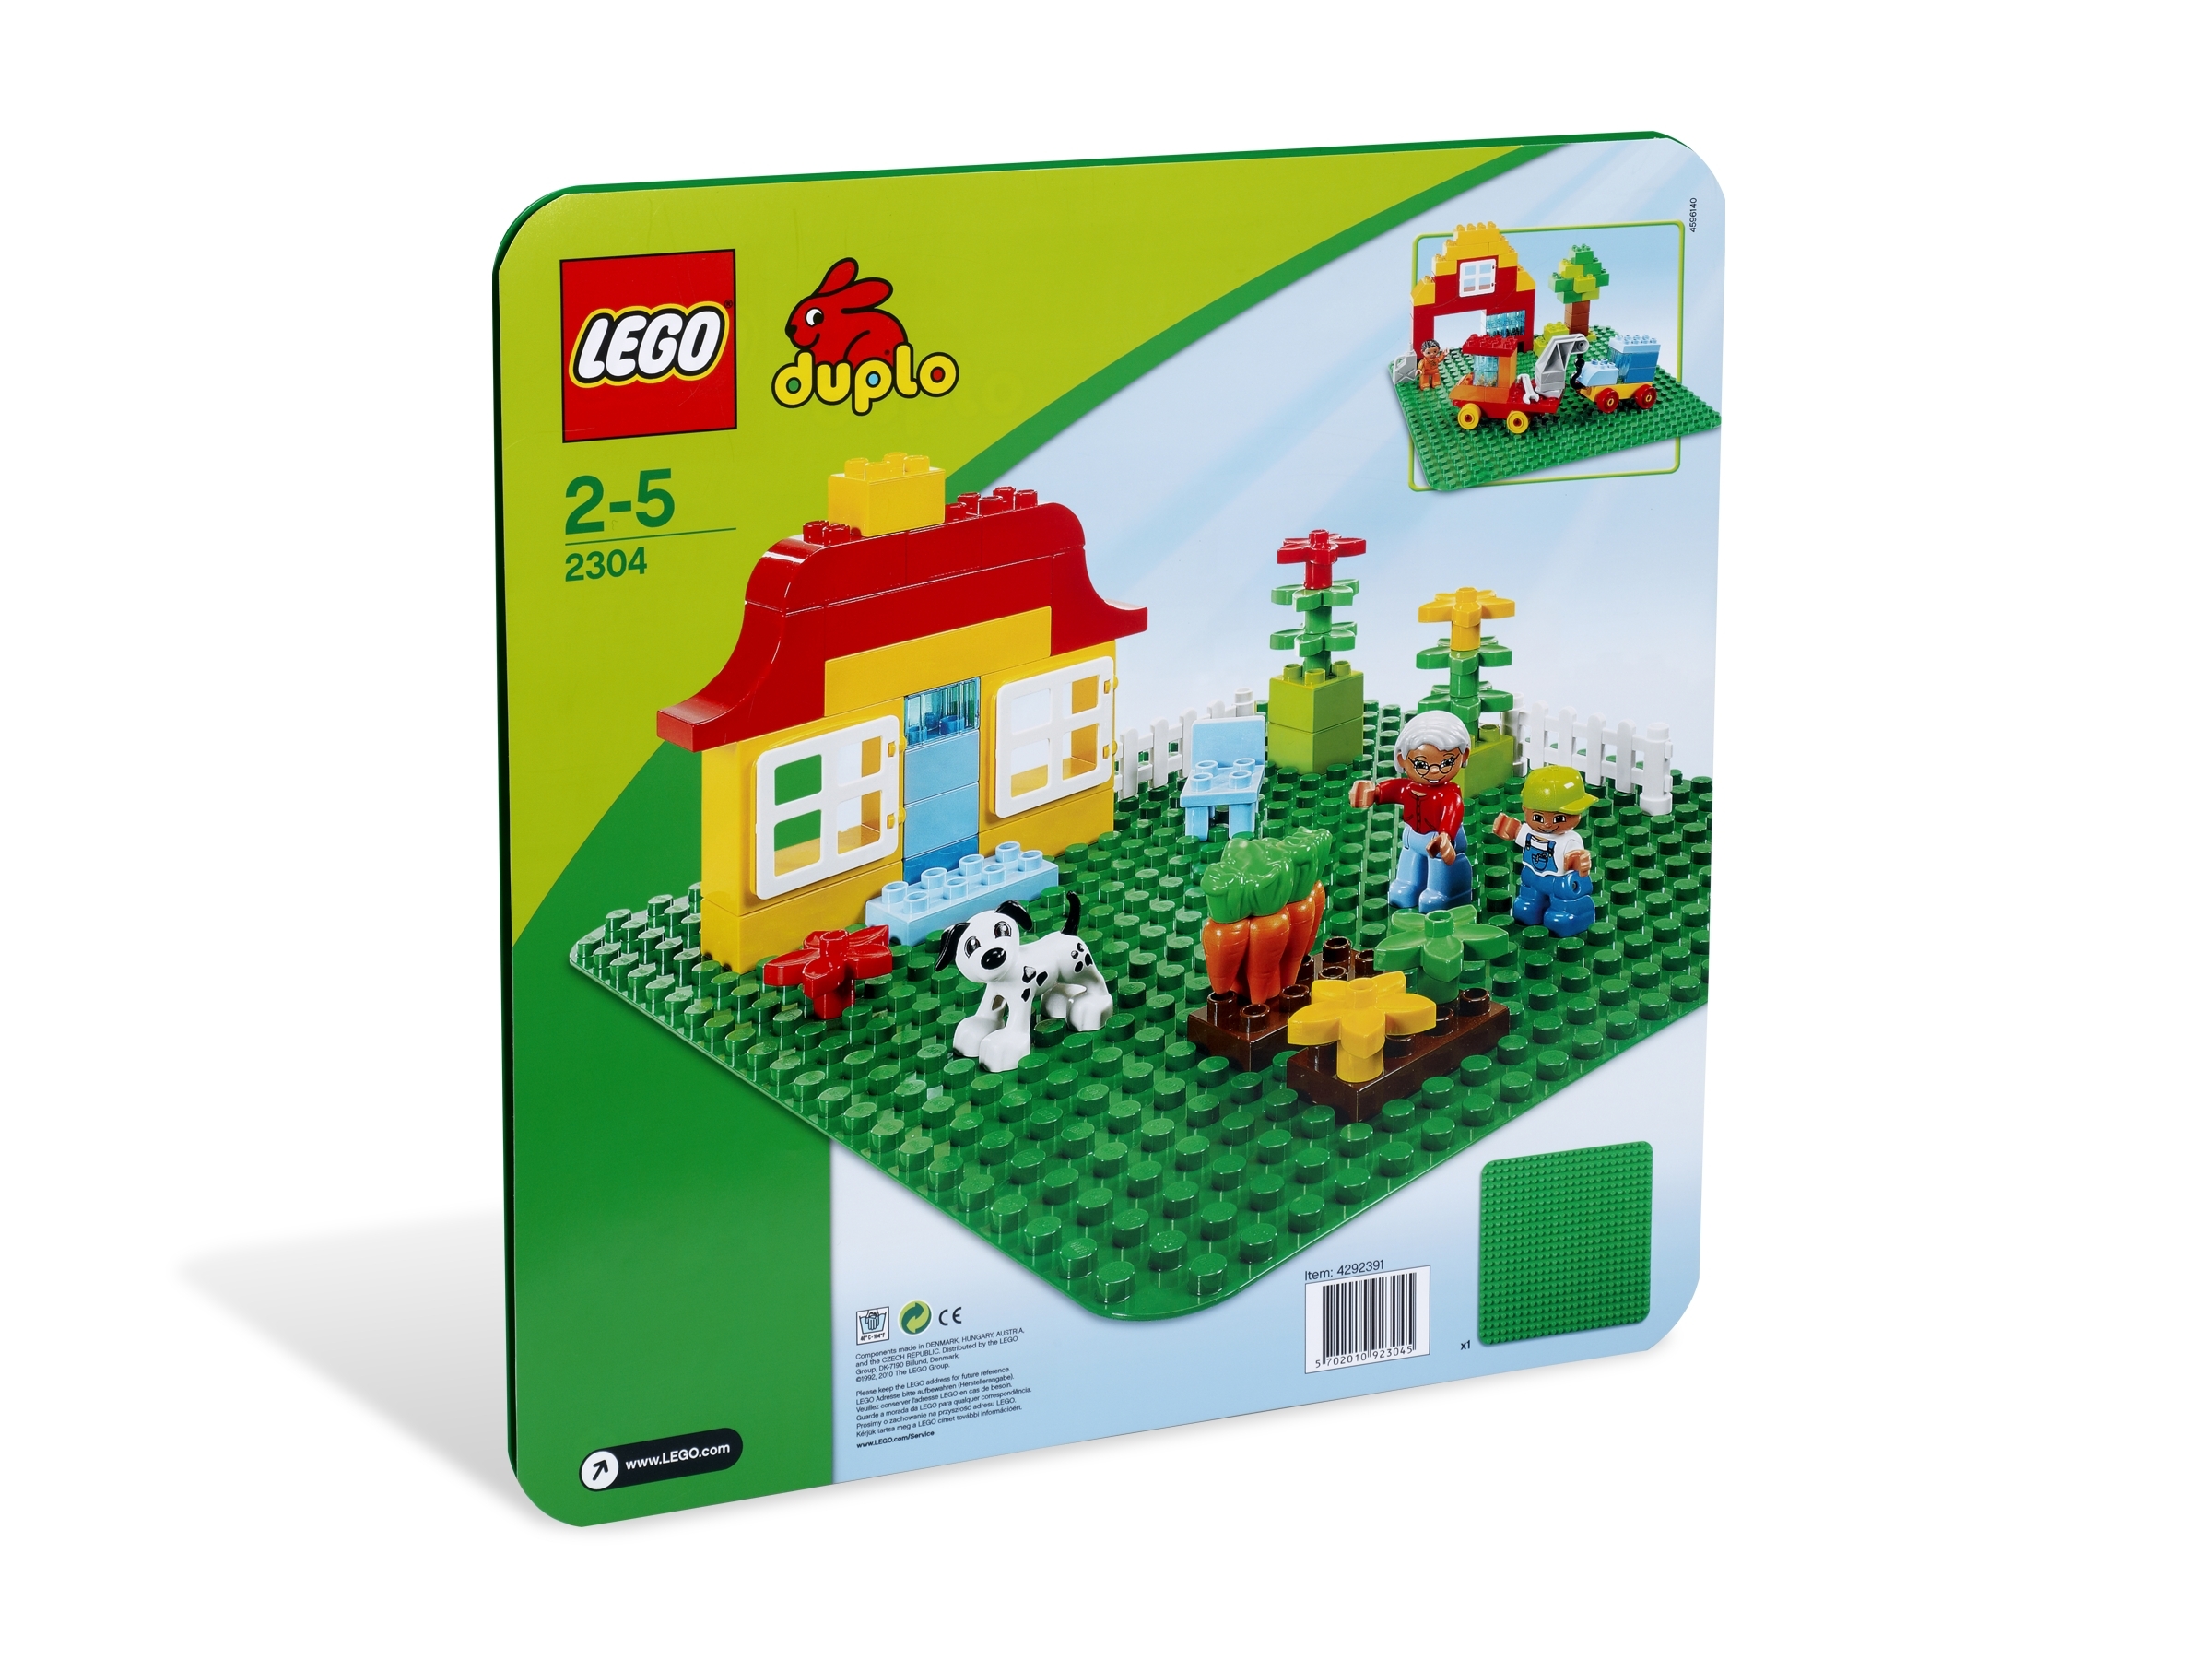 LEGO® DUPLO® Green Baseplate 2304 